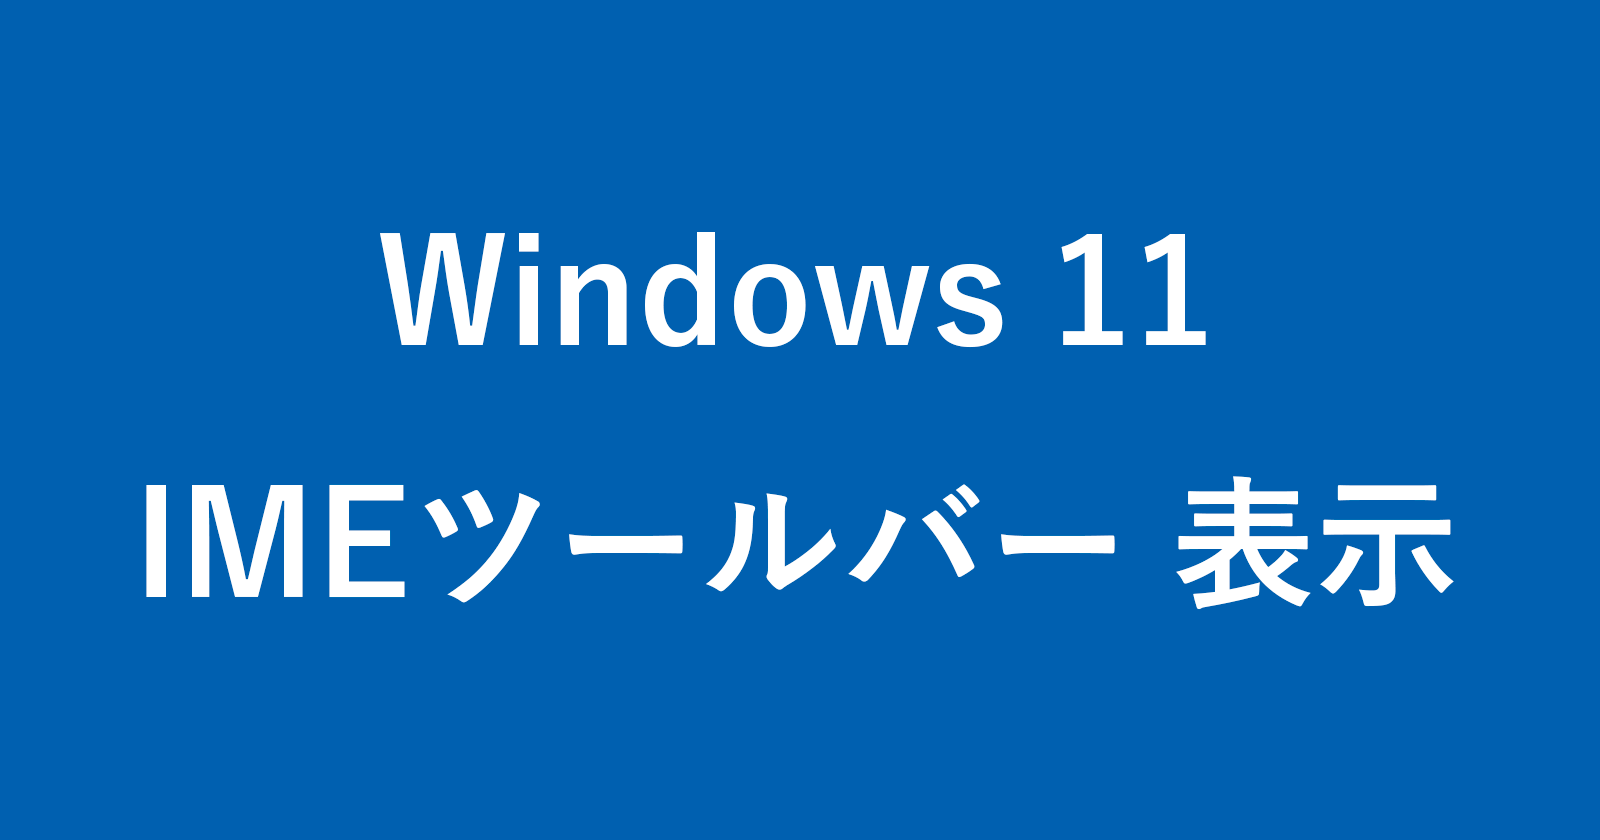 windows 11 ime toolbar